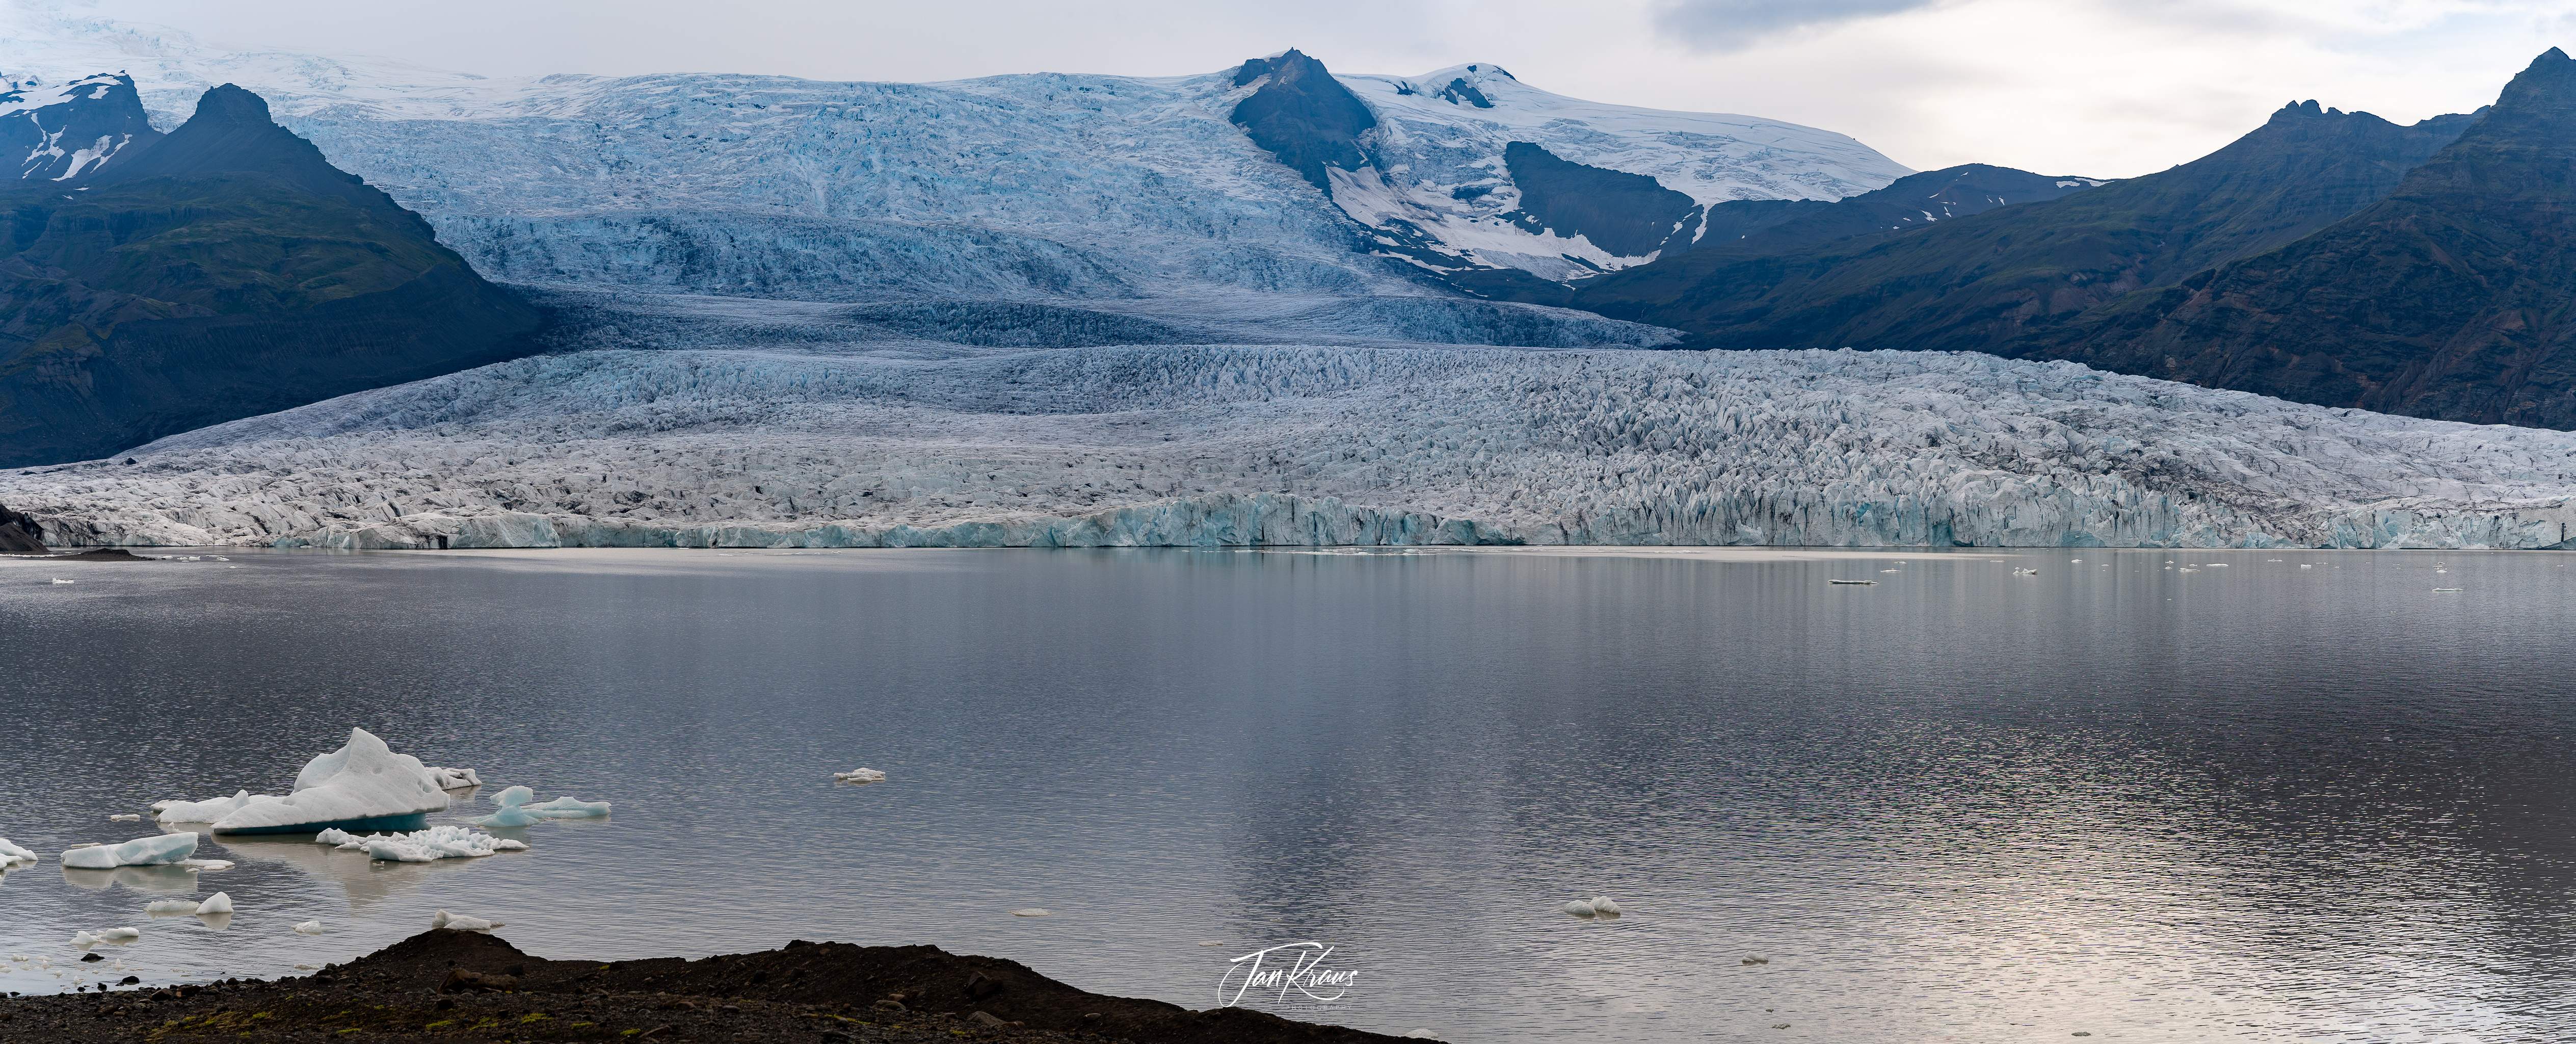  Fjallsárlón - glacial lagoon in front of Vatnajökull glacier, Iceland